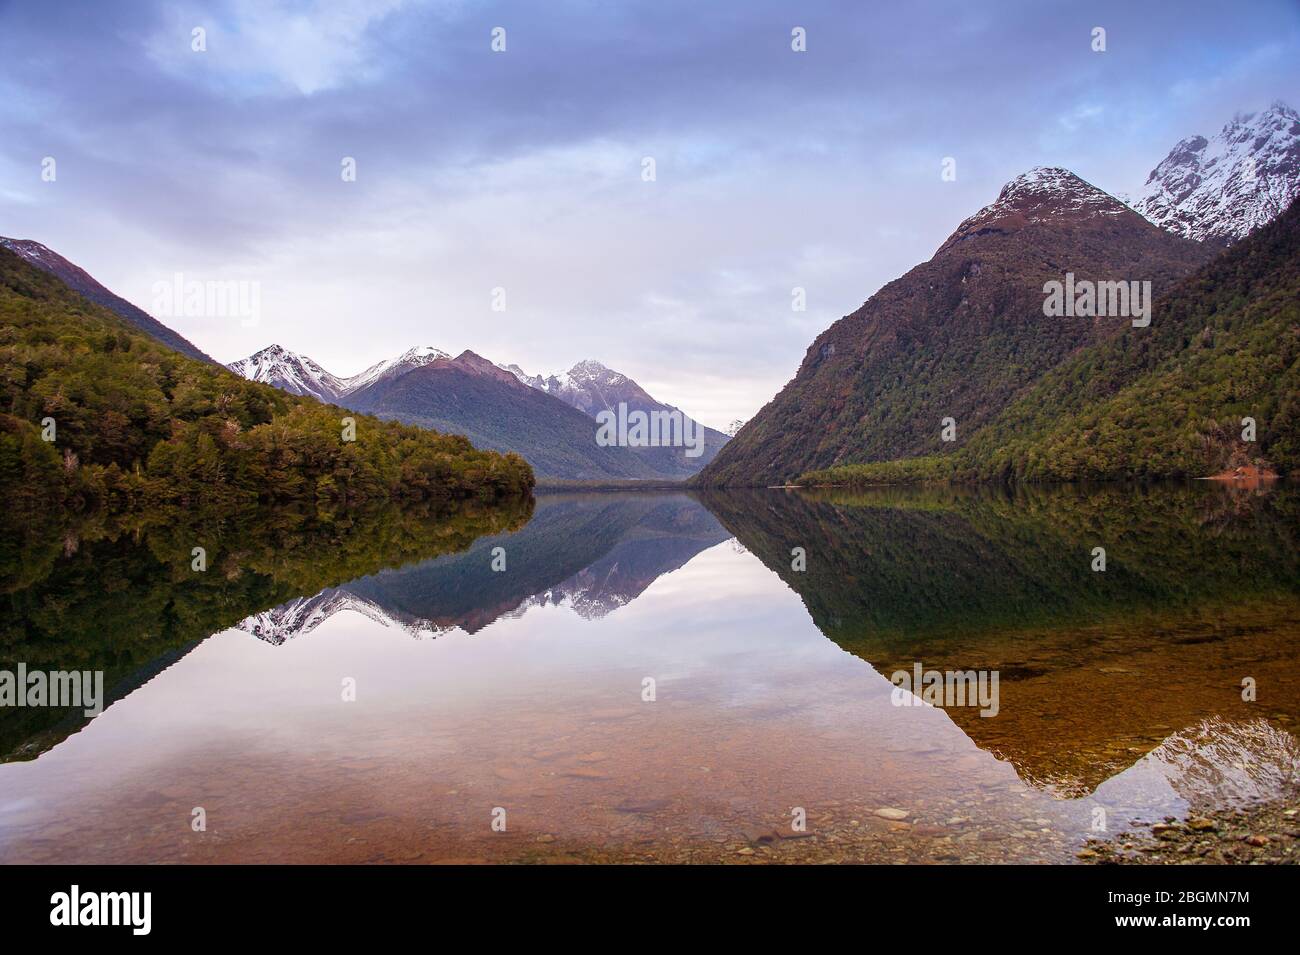 Lake Gunn, Fiordland, Nouvelle-Zélande. Paysage pittoresque, sur une montagne reflète dans l'eau claire d'un lac. Banque D'Images